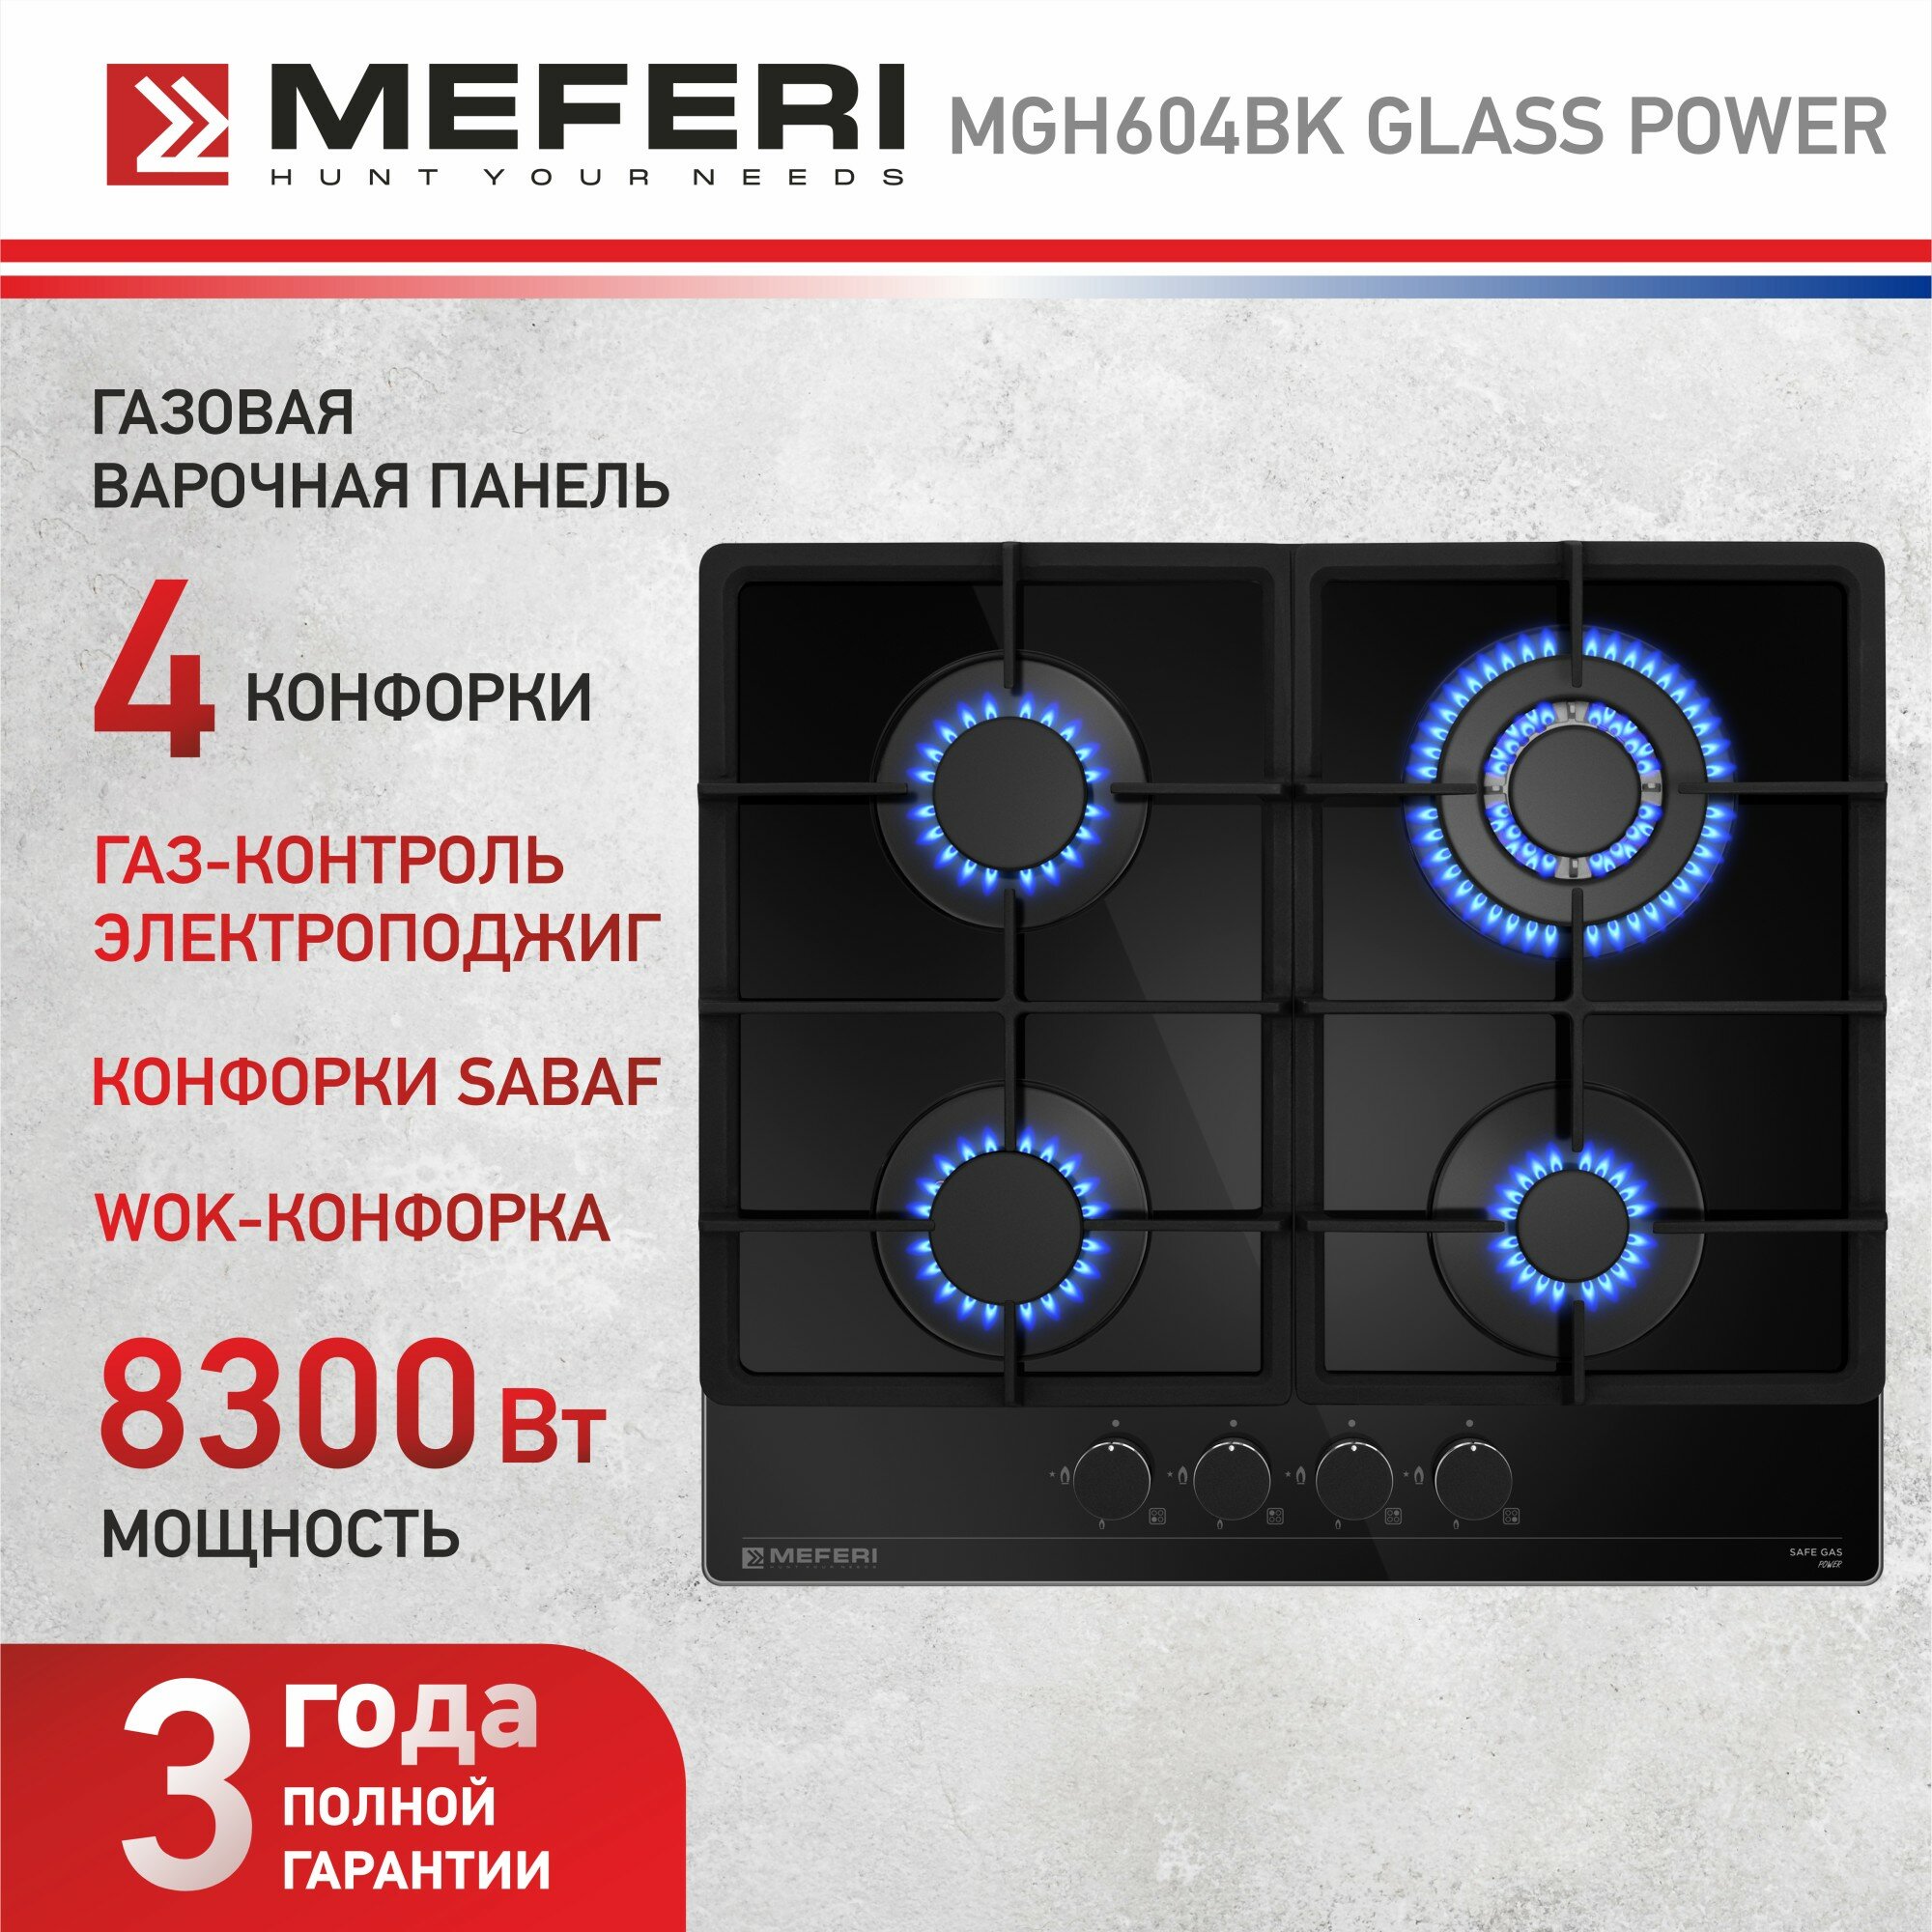 Газовая варочная панель MEFERI MGH604BK GLASS POWER, автоподжиг, газ-контроль, черное стекло